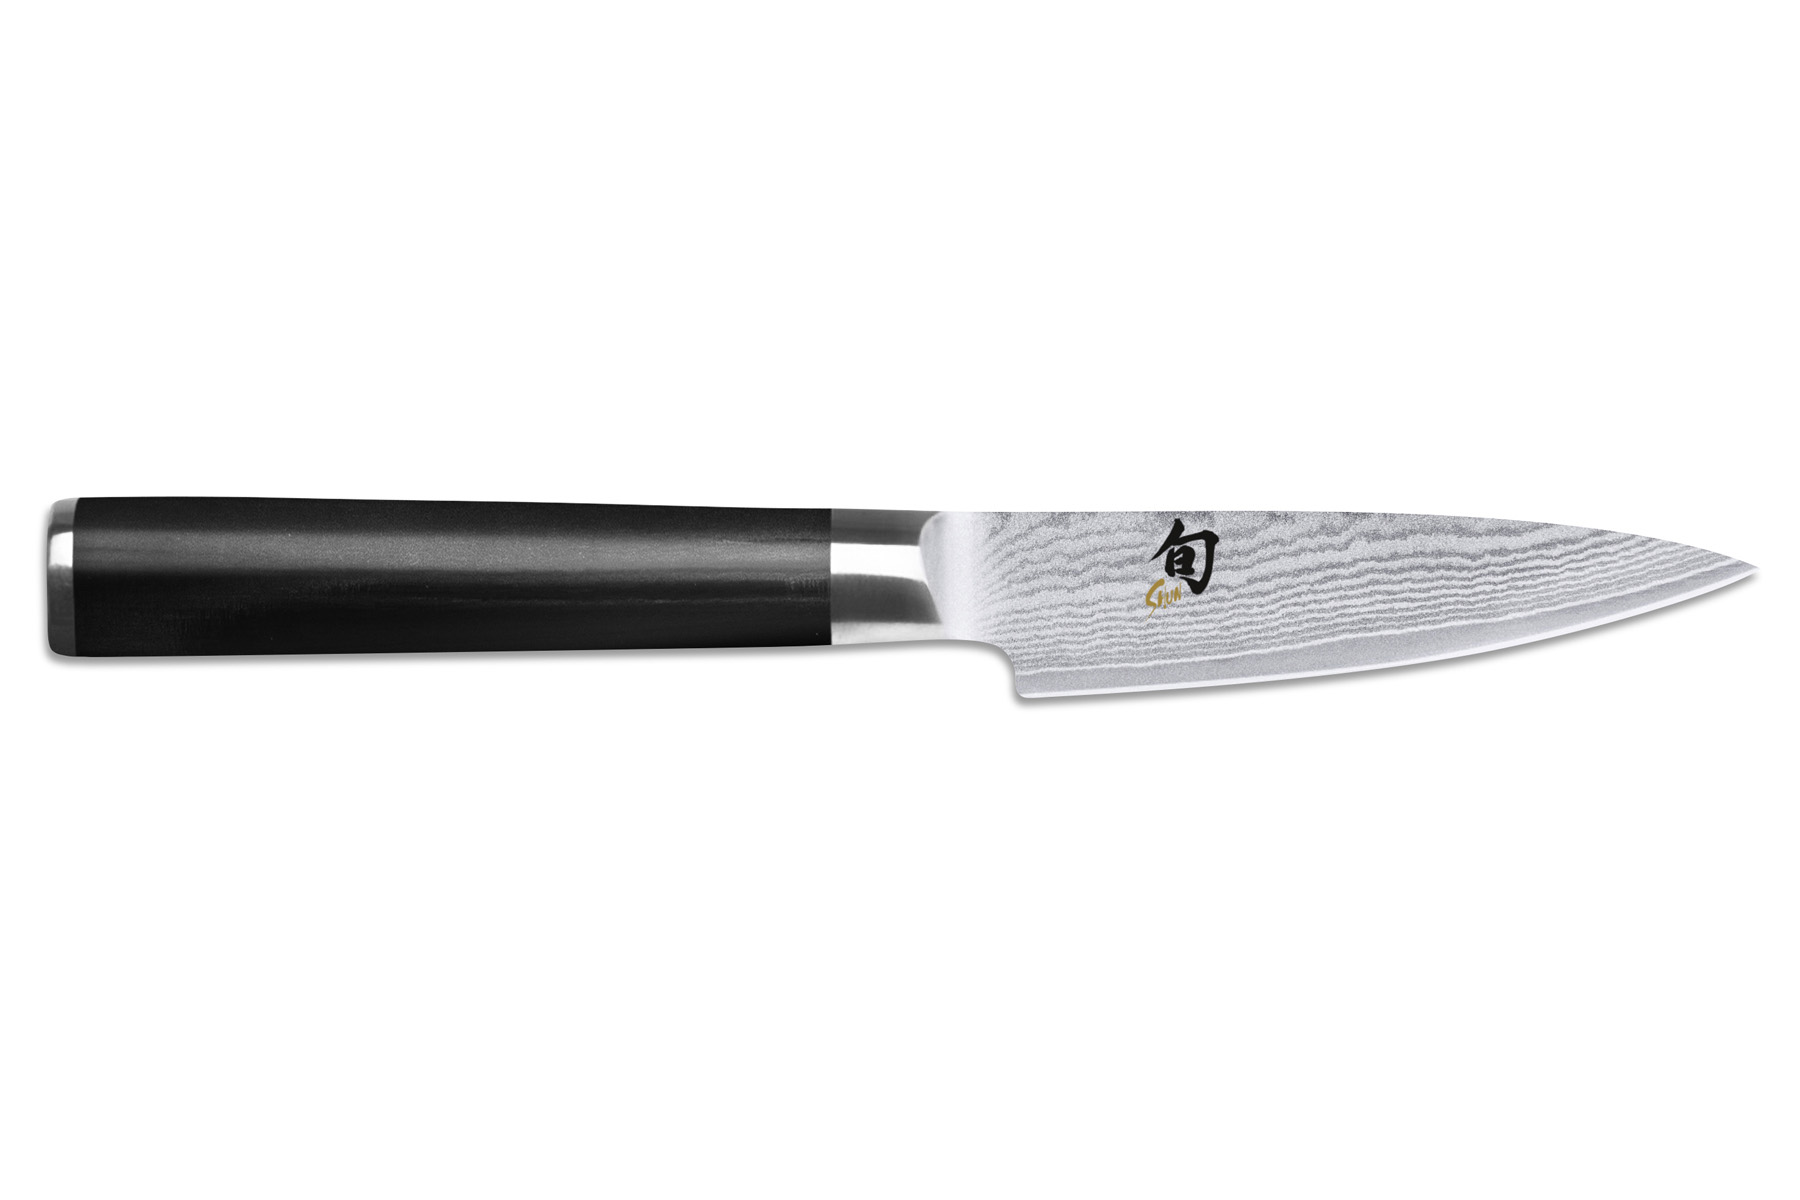 Couteau japonais Kai Shun Classic Damas - couteau d'office 9 cm